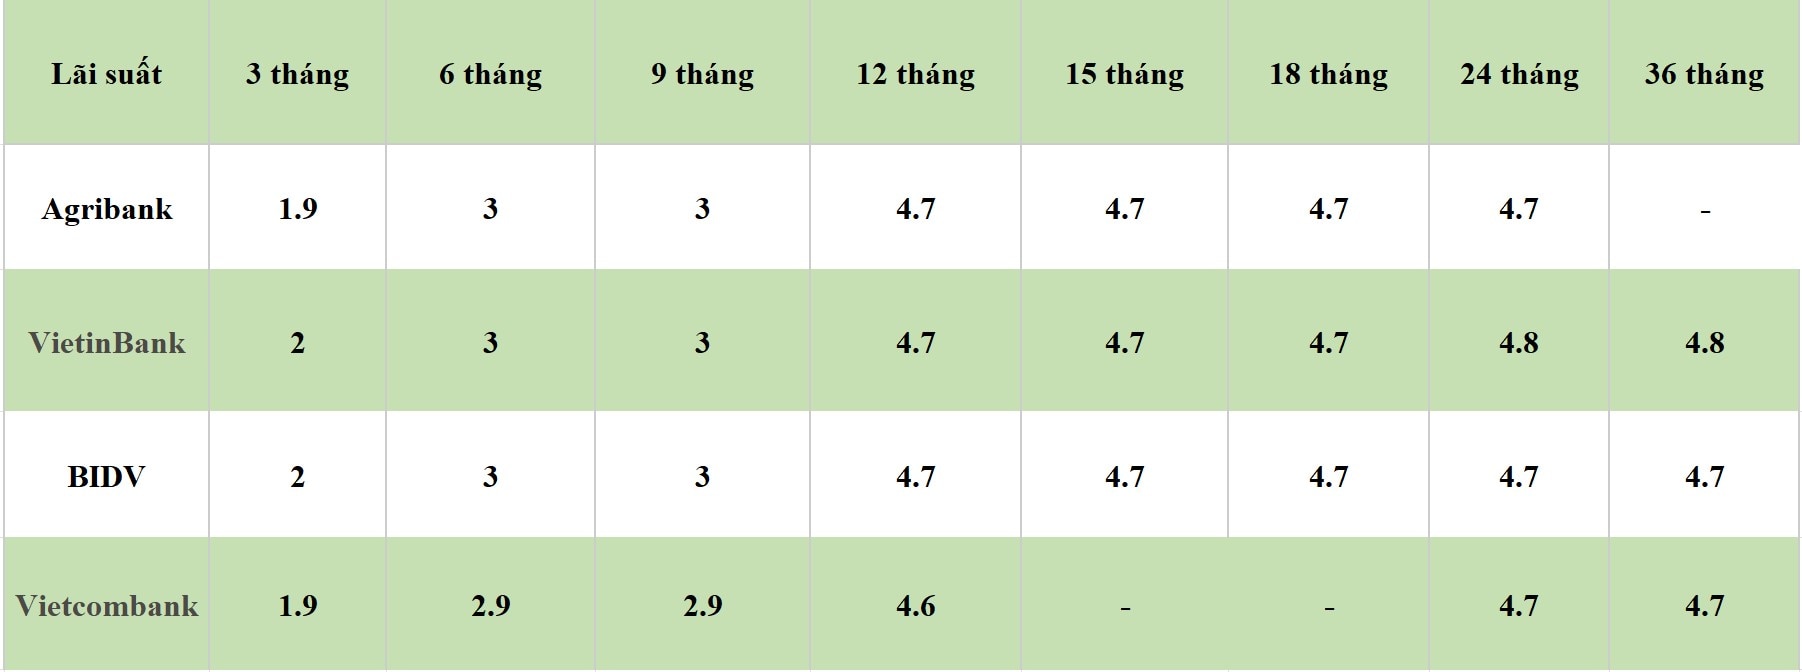 Bảng lãi suất các kỳ hạn tại Vietcombank, Agribank, VietinBank và BIDV. Số liệu ghi nhận ngày 24.4.2024. Đơn vị tính: %/năm. Bảng: Khương Duy  